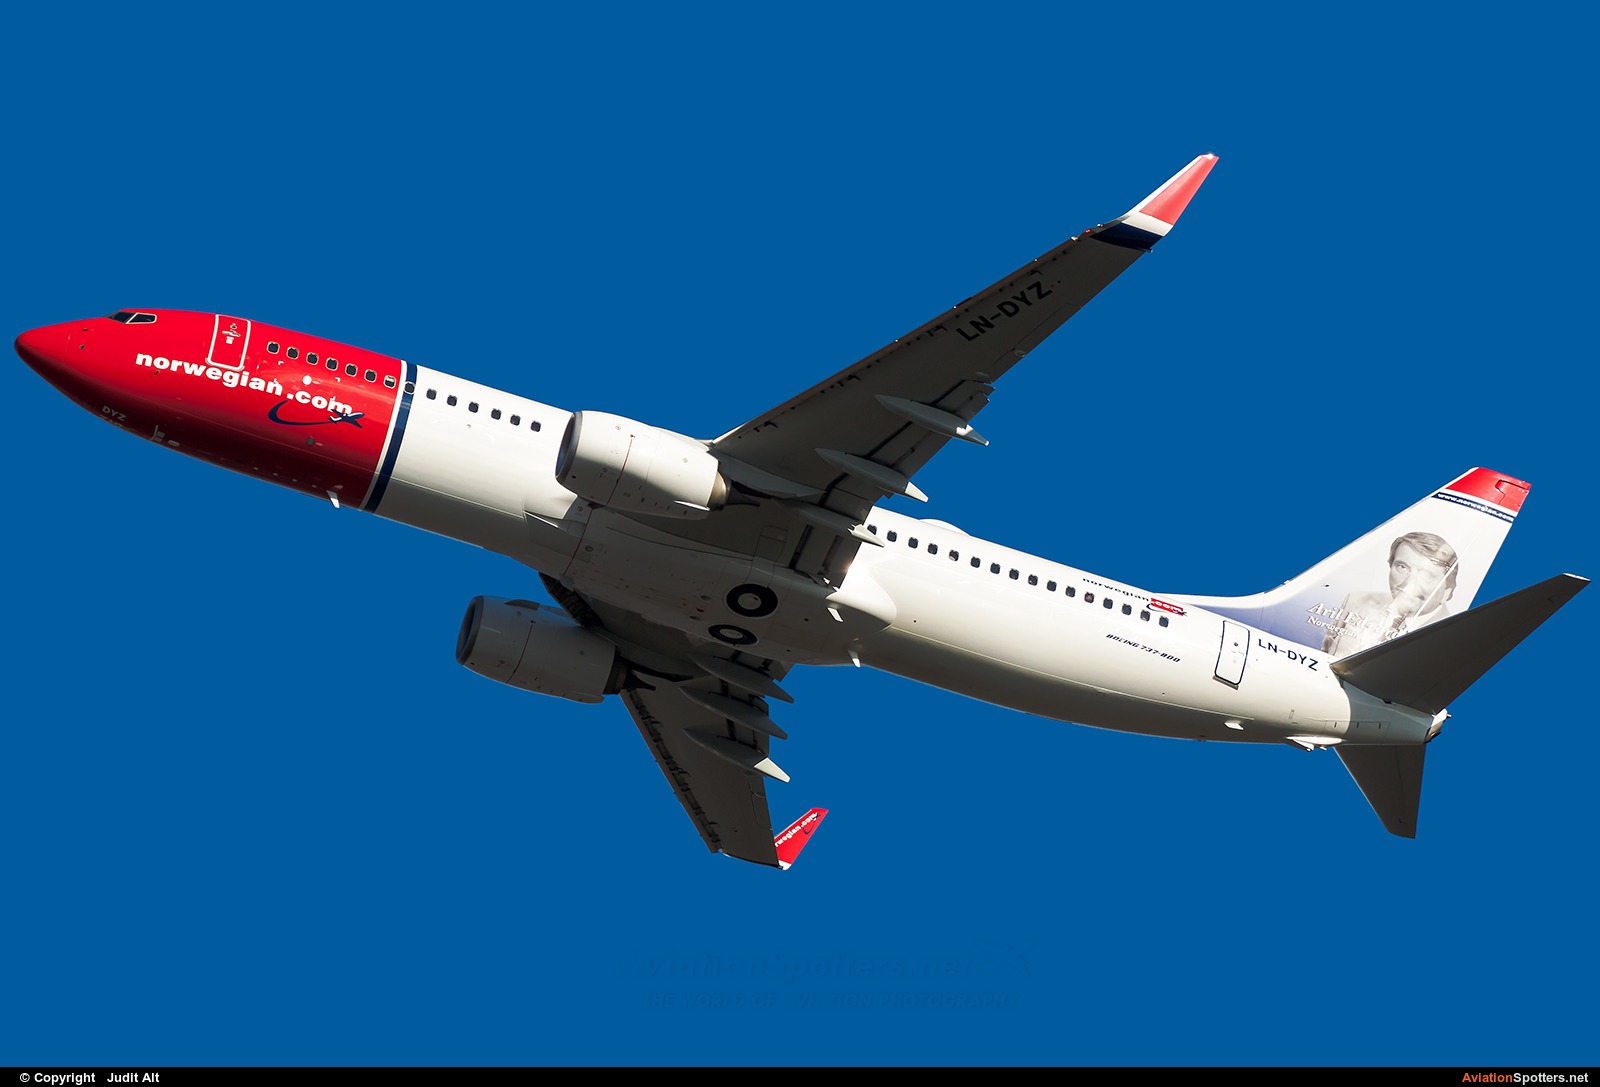 Norwegian Air Shuttle  -  737-800  (LN-DYZ) By Judit Alt (Judit)